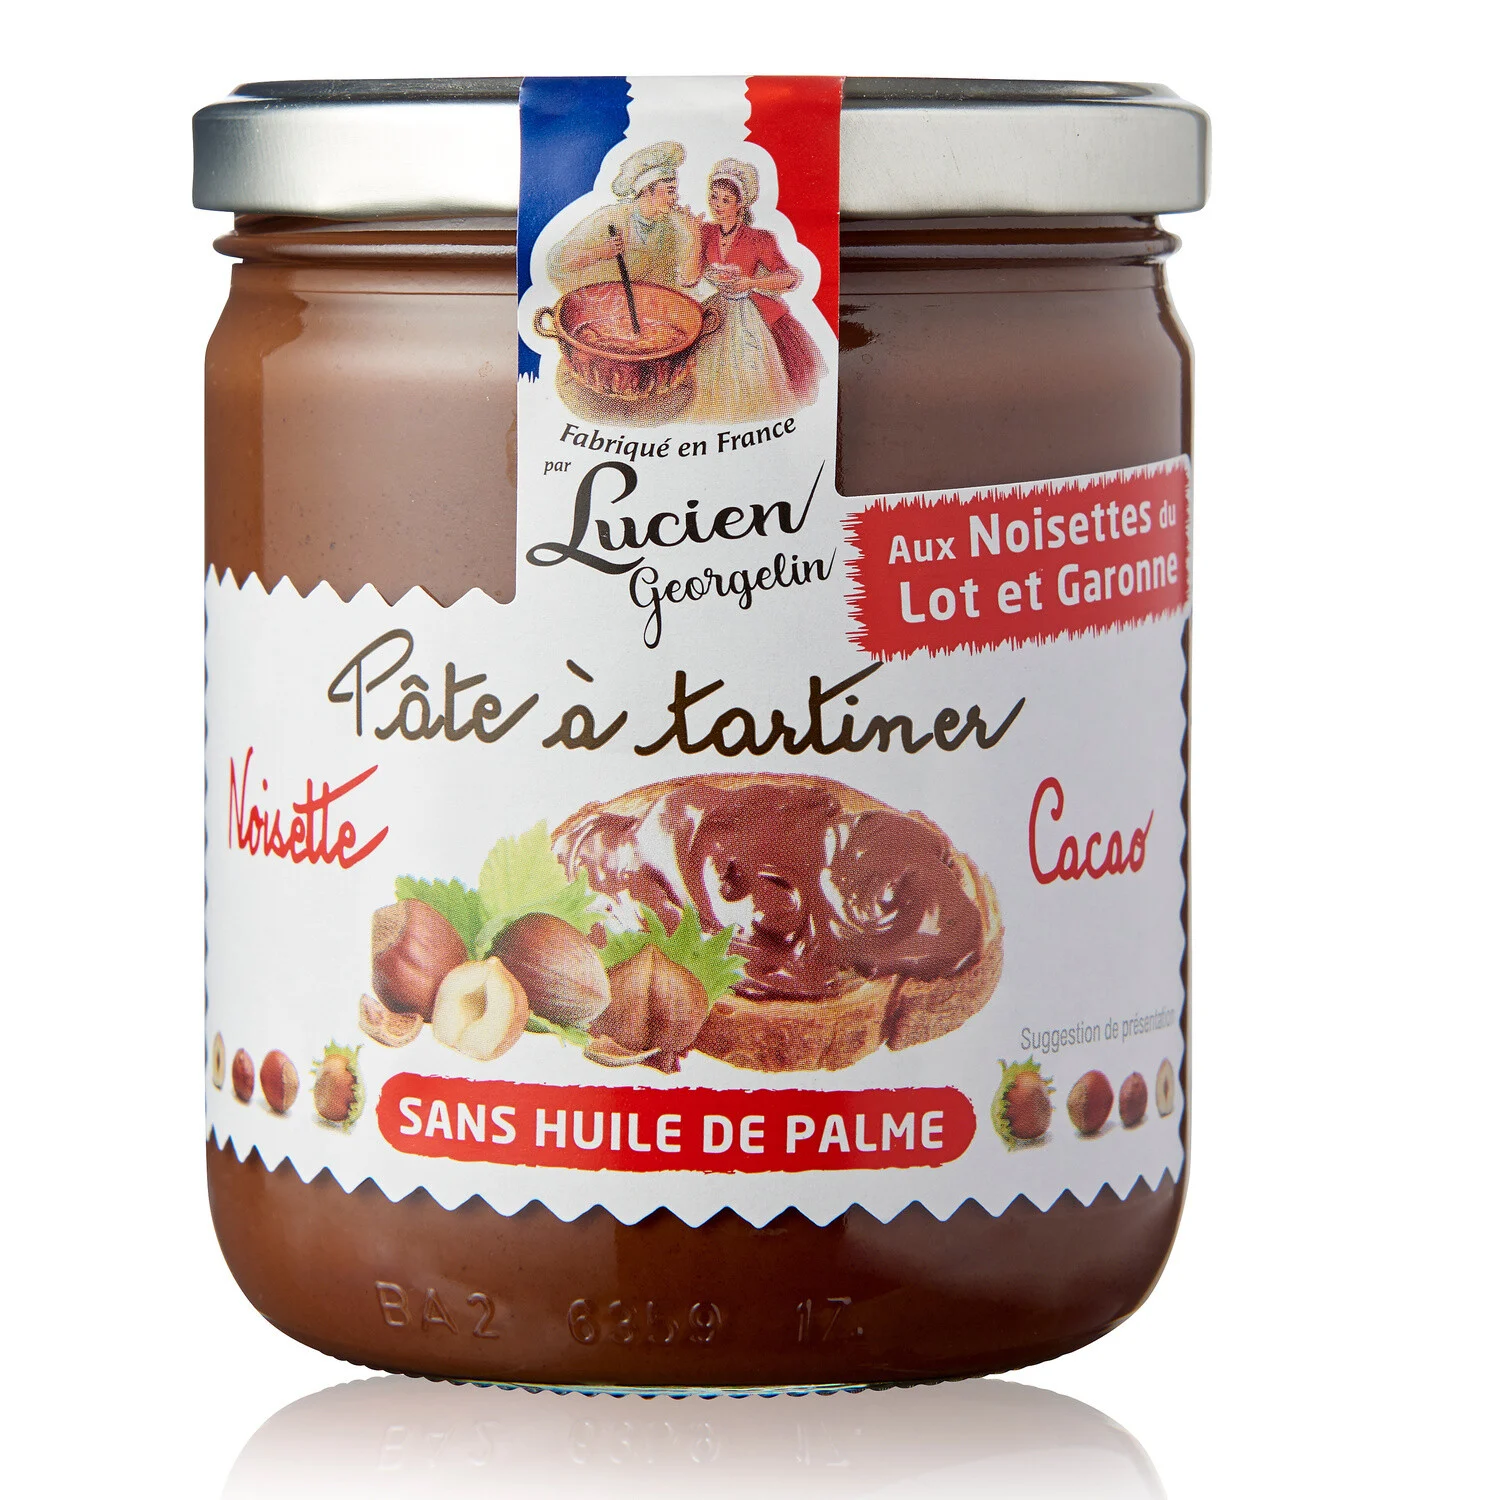 Ореховая паста из Lot et Garonne и какао
Без пальмового масла 400г - LUCIEN GEORGELIN